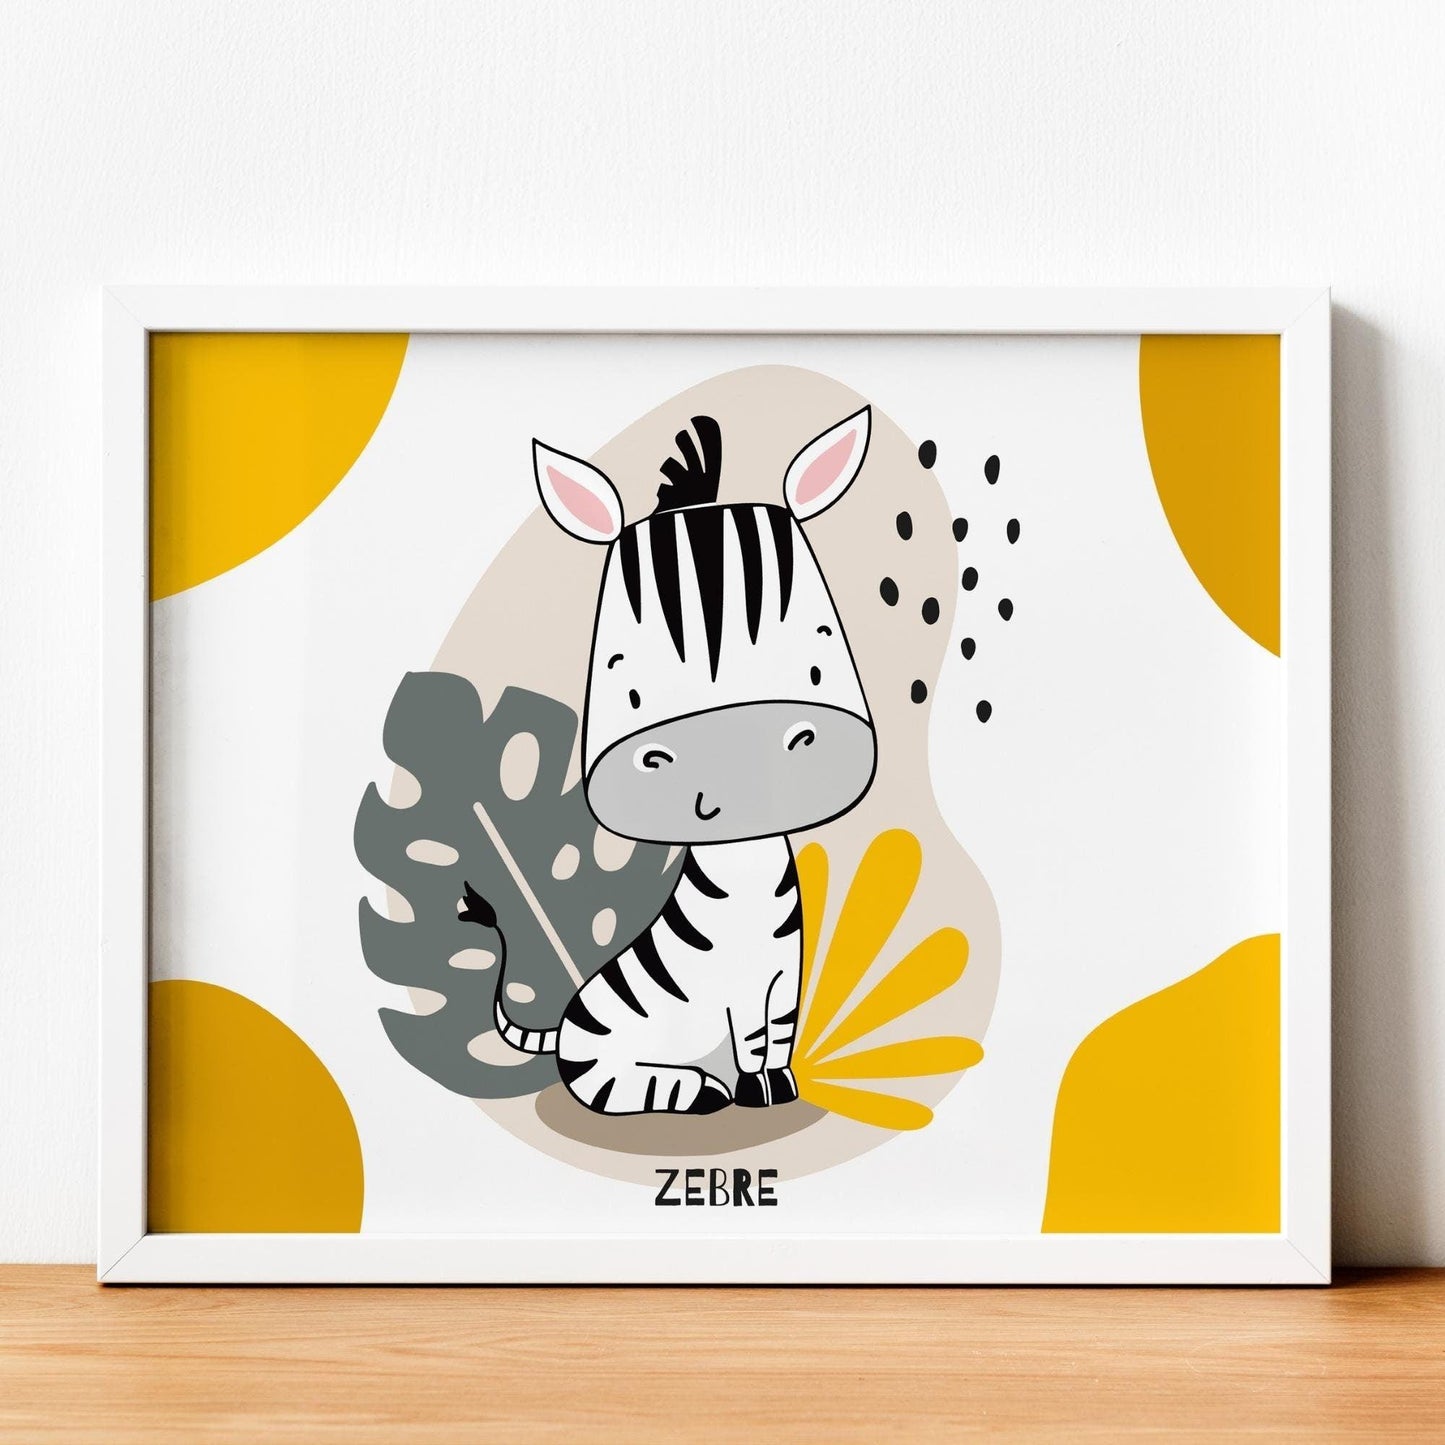 Affiche Lion Zèbre Girafe jaune - Poster bebe enfant - Déco chambre jungle safari - affiche animaux - illustration enfant - naissance A4 A3 - Imagine.affiche